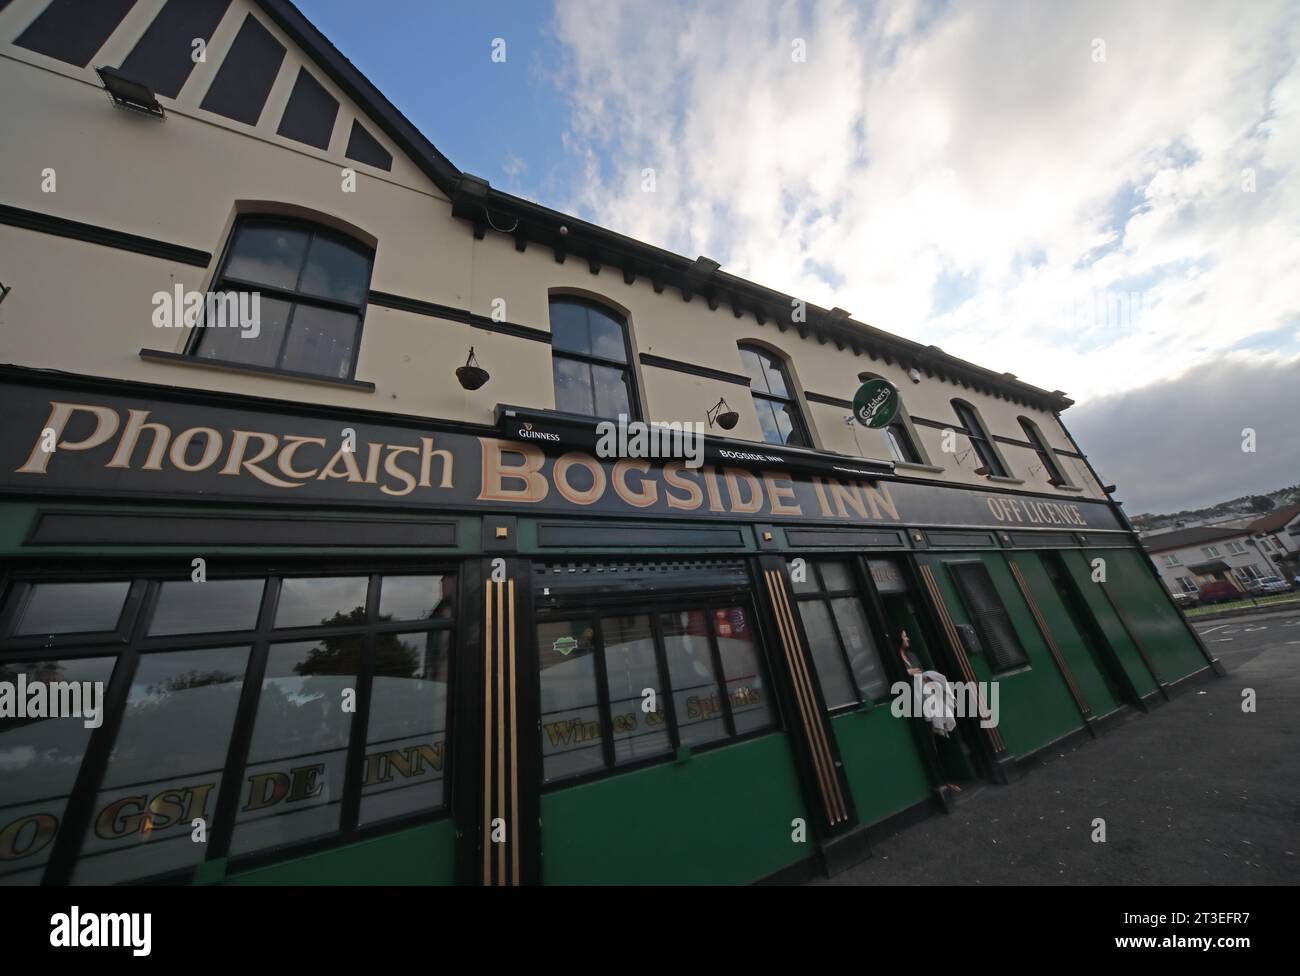 Bogside Inn - Phorcaish la zone Bogside de Derry Londonderry, Irlande du Nord, Royaume-Uni, BT48 9JE Banque D'Images